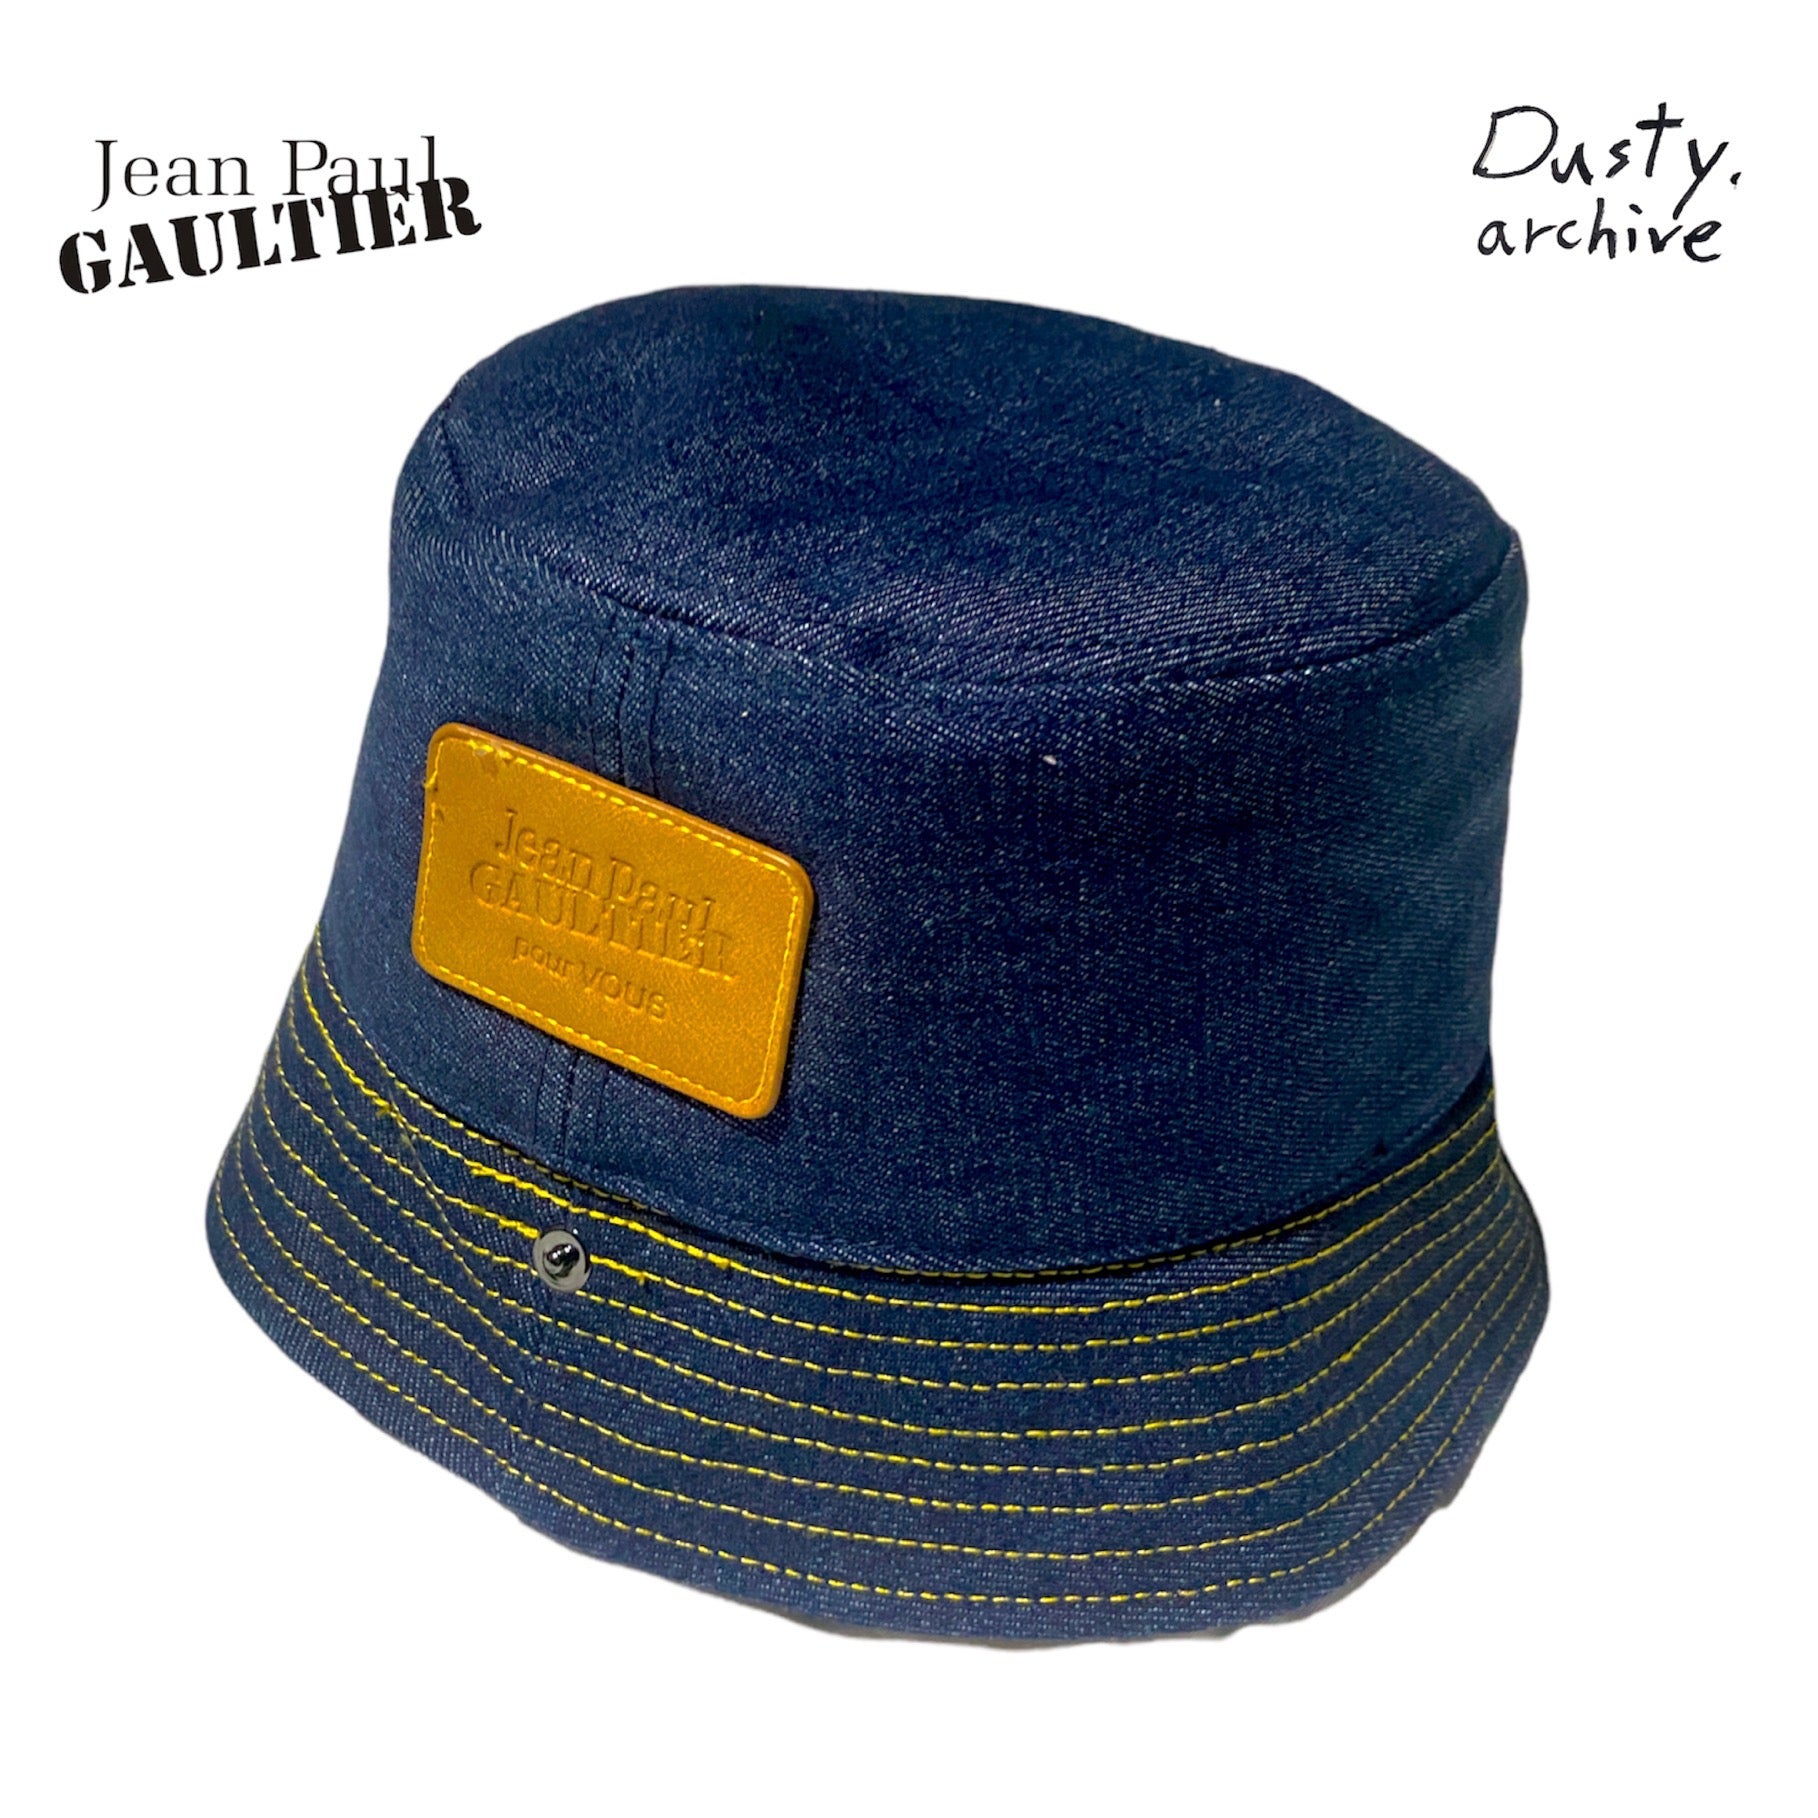 Jean Paul gaultier pour Vous denim bucket hat – Dusty Archive